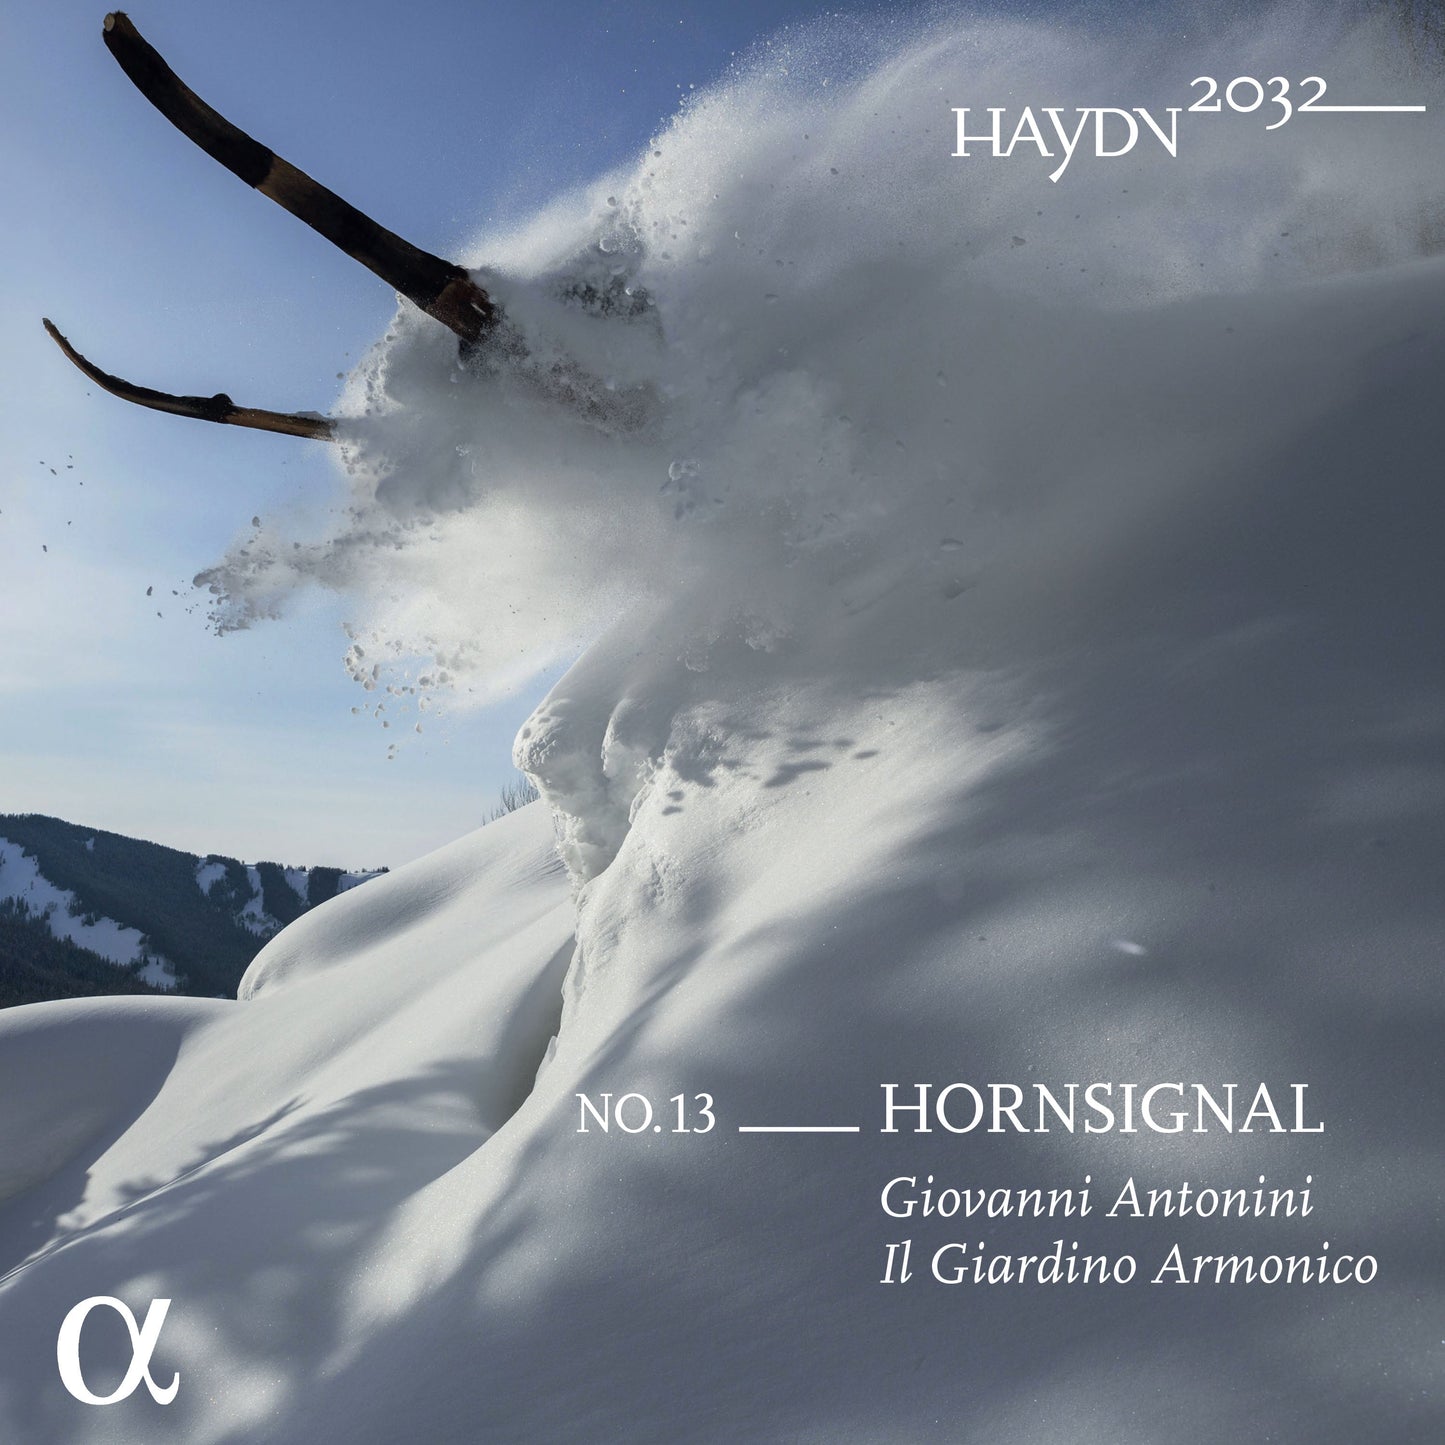 Haydn 2032, Vol. 13 - Horn Signal